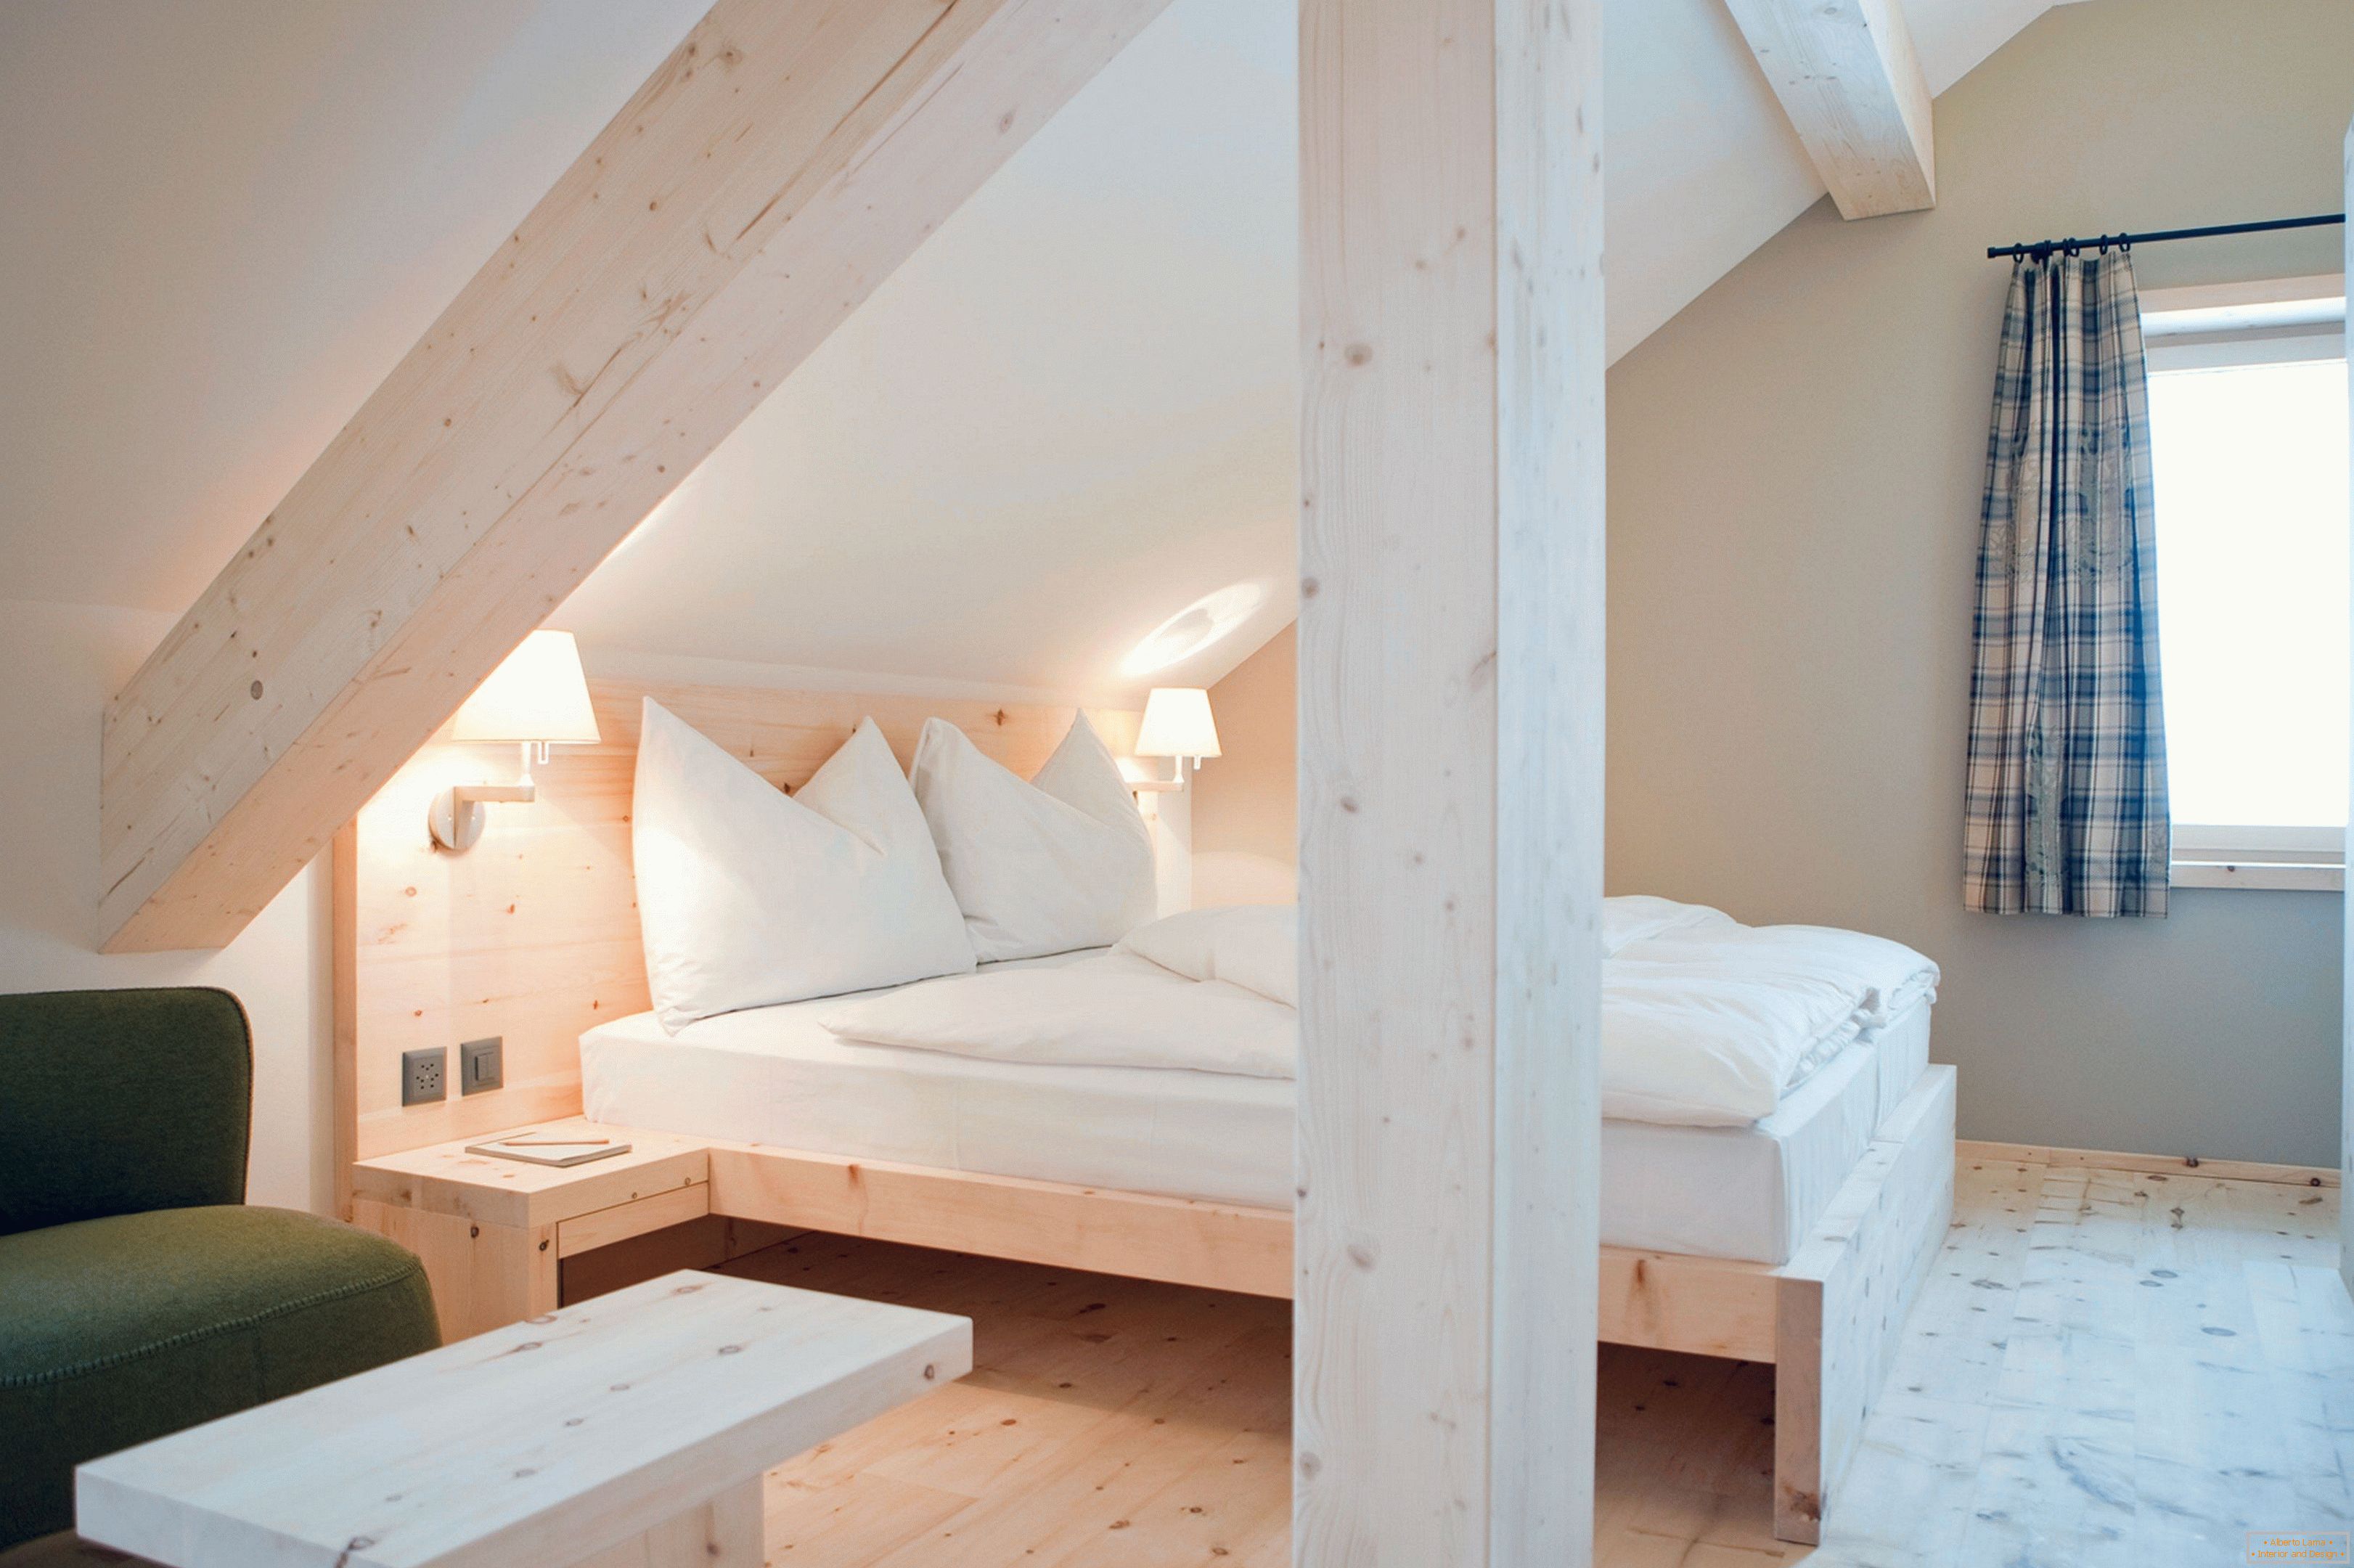 Camera da letto ecologica con finiture in legno